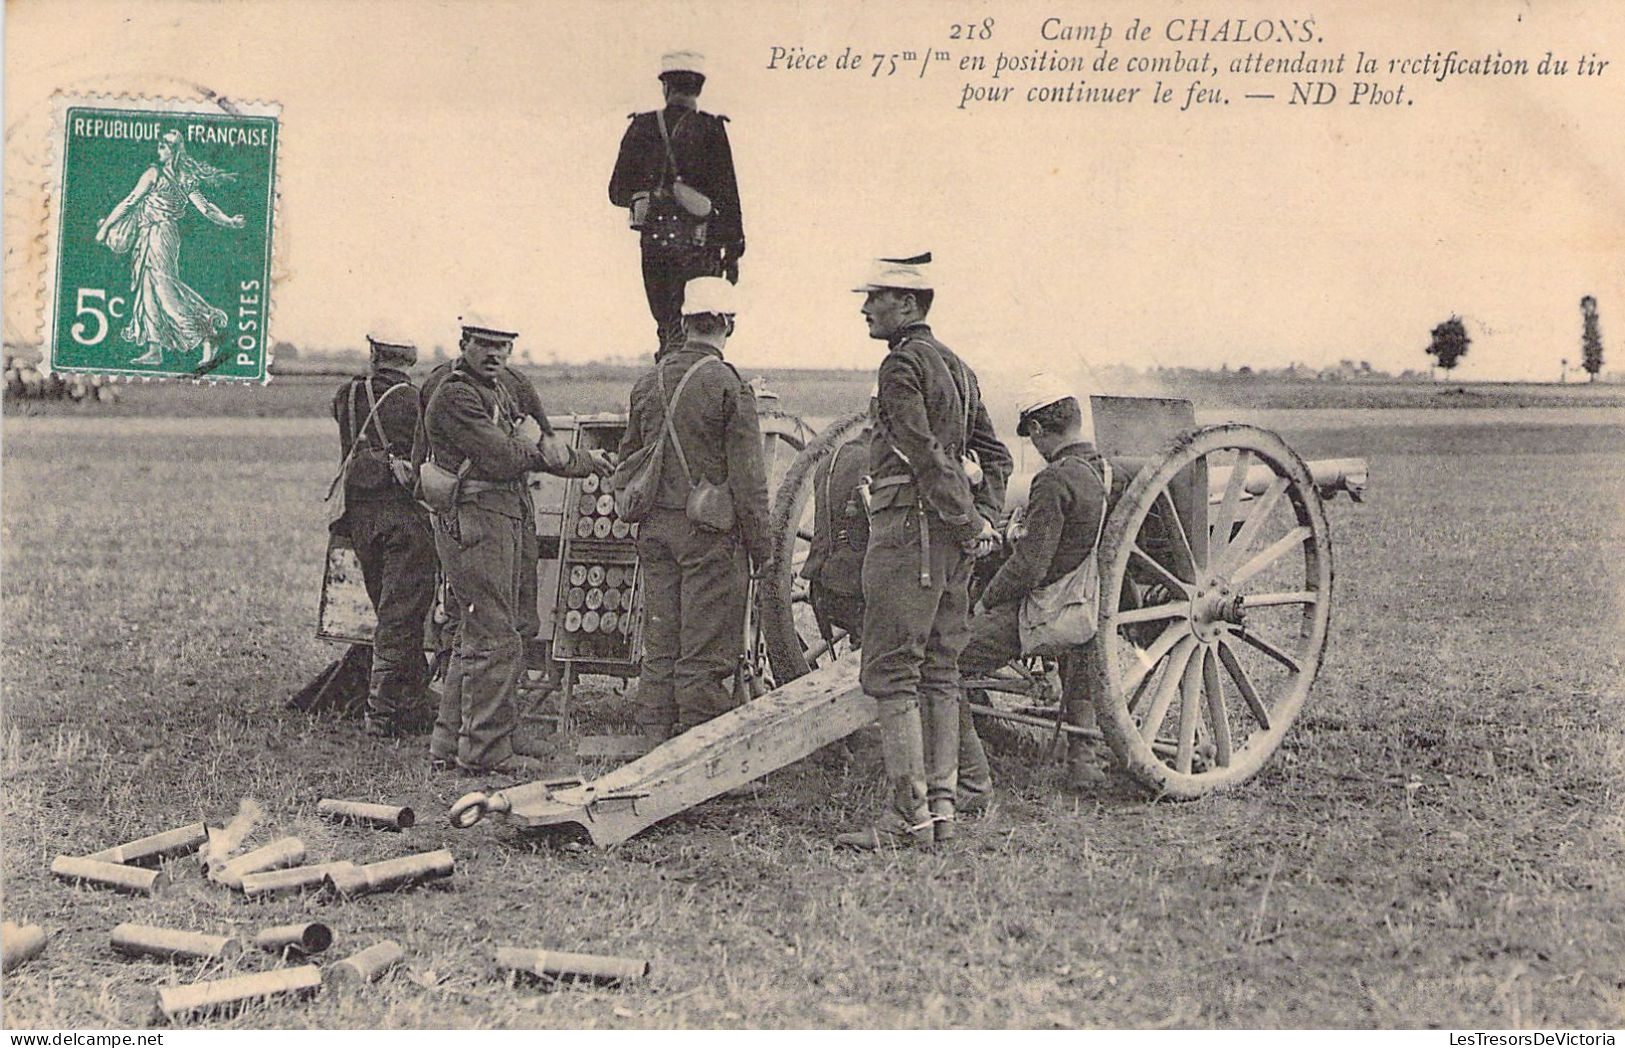 CASERNES - Camp De Chalons - Piéce De 75 En Position De Combat Attendant La Rectification Tir - Carte Postale Ancienne - Kasernen